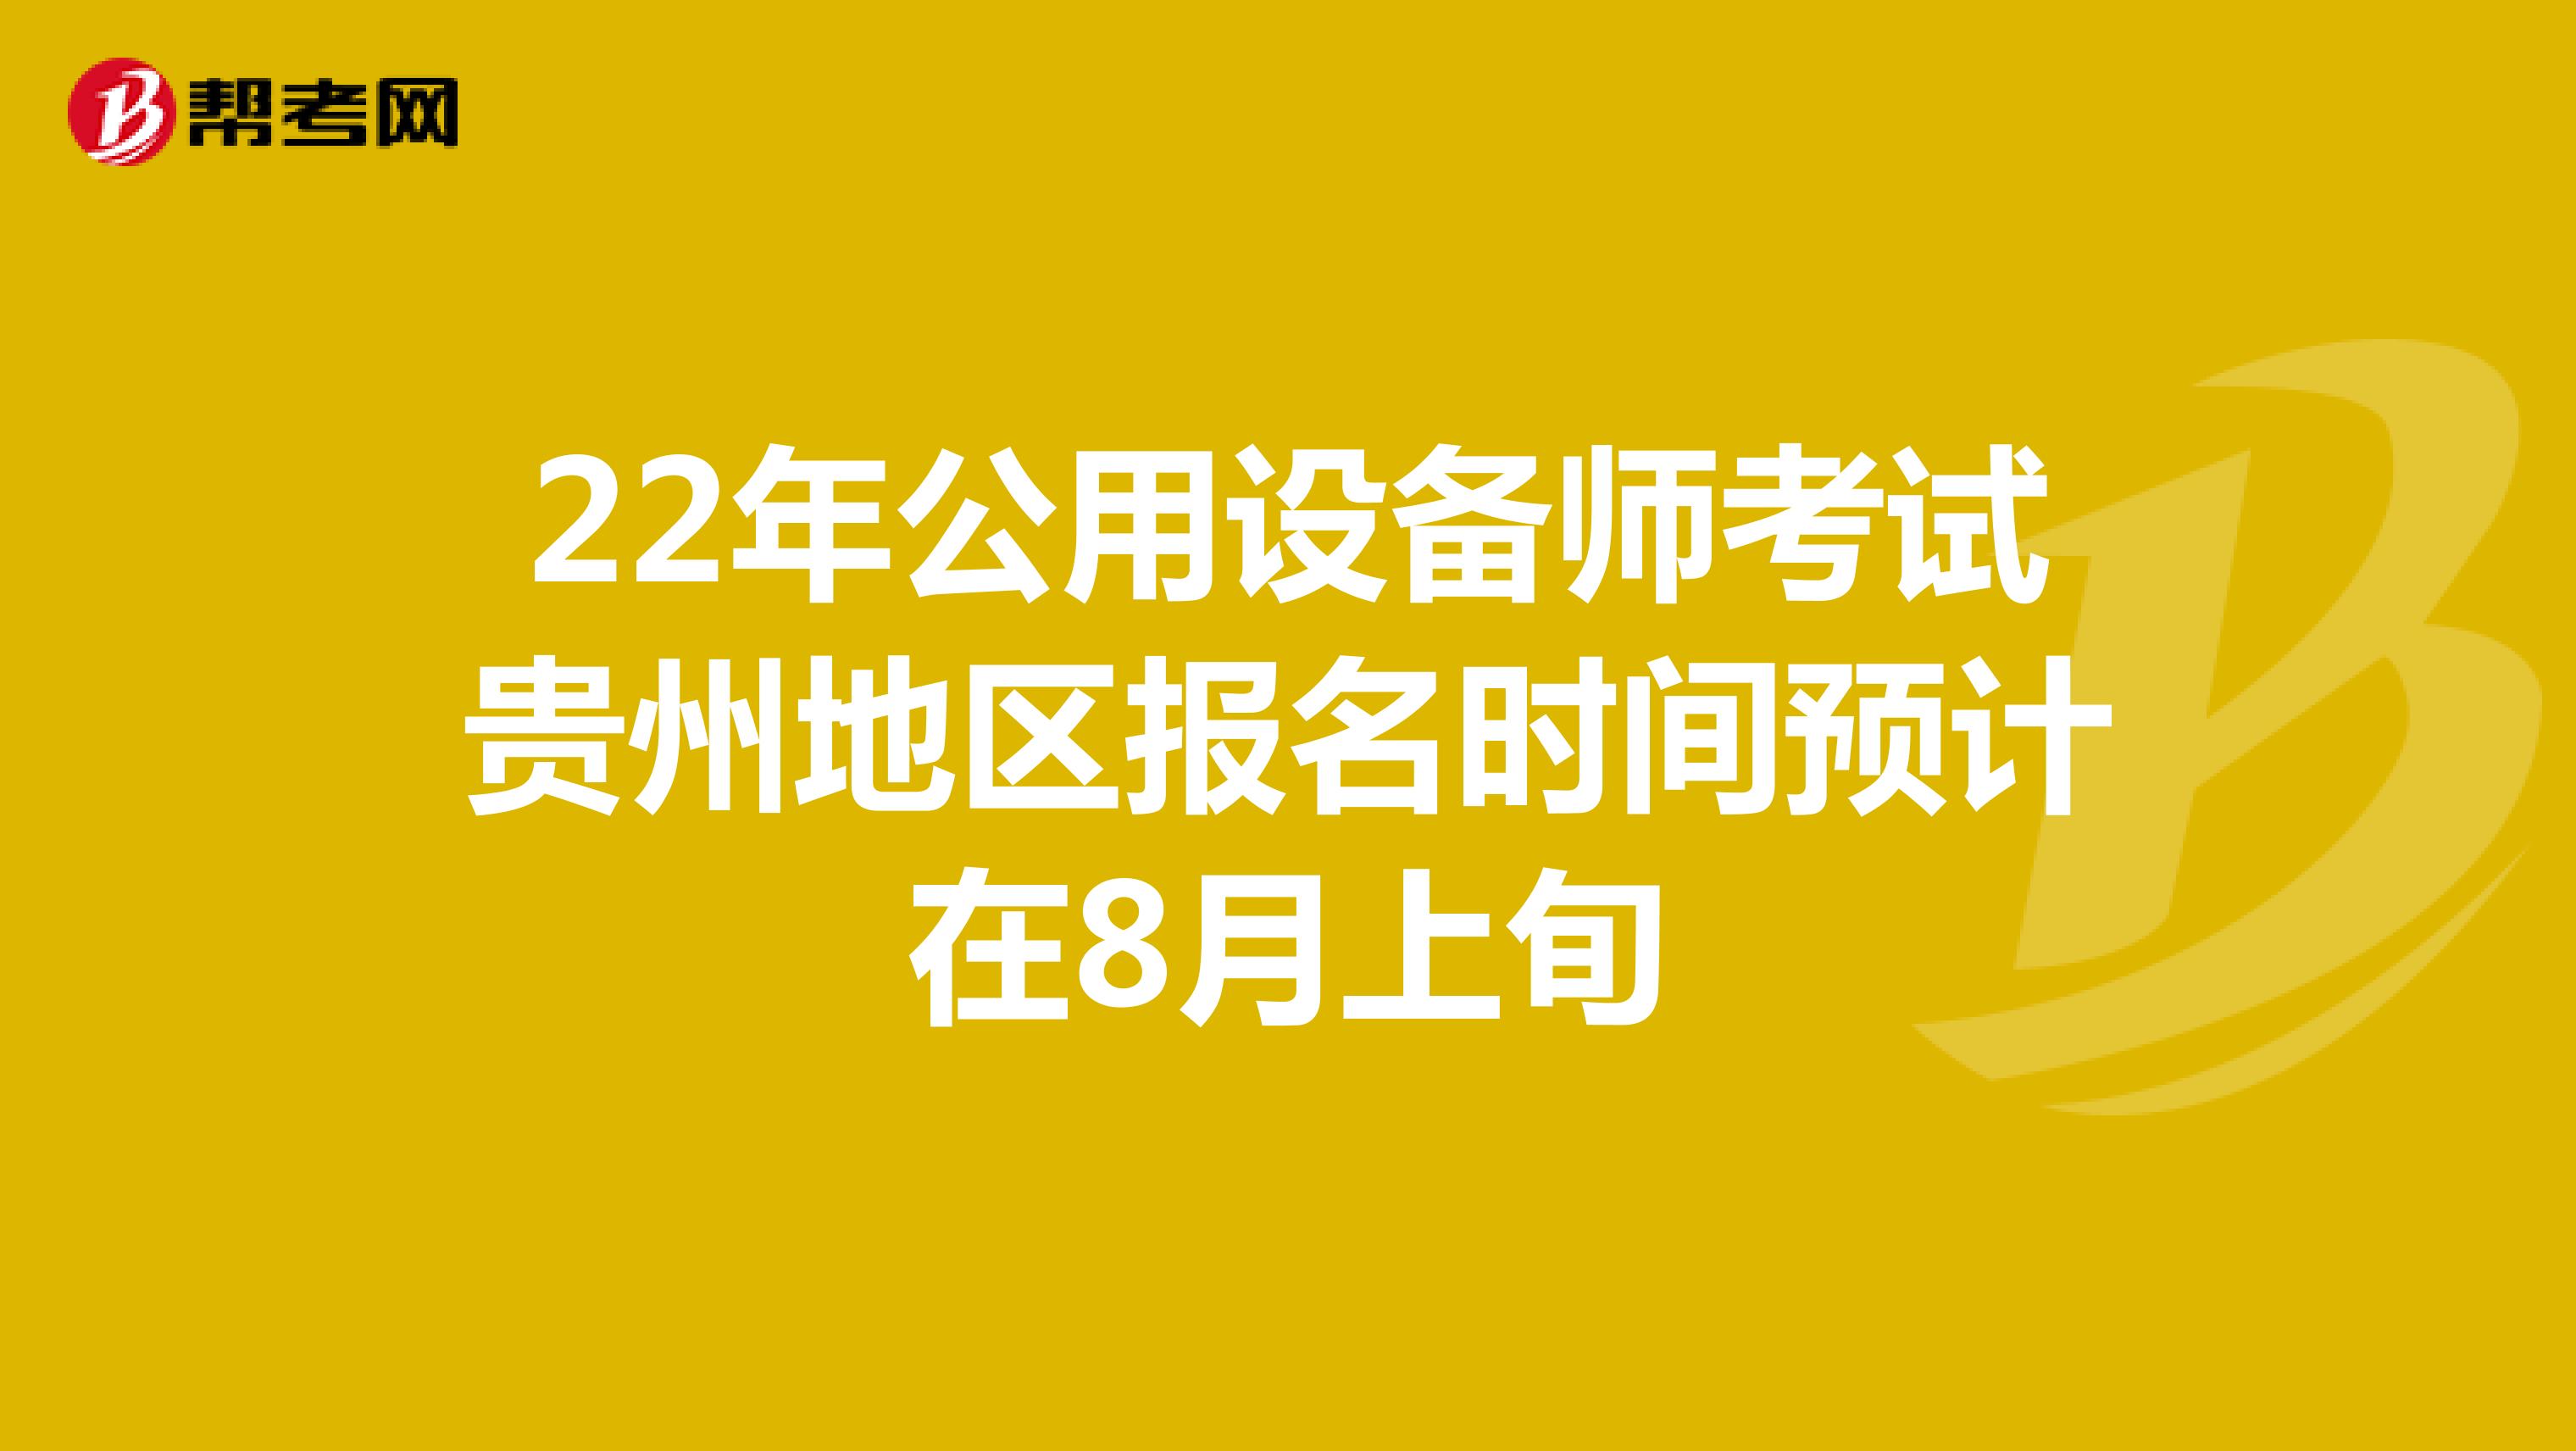 22年公用设备师考试贵州地区报名时间预计在8月上旬